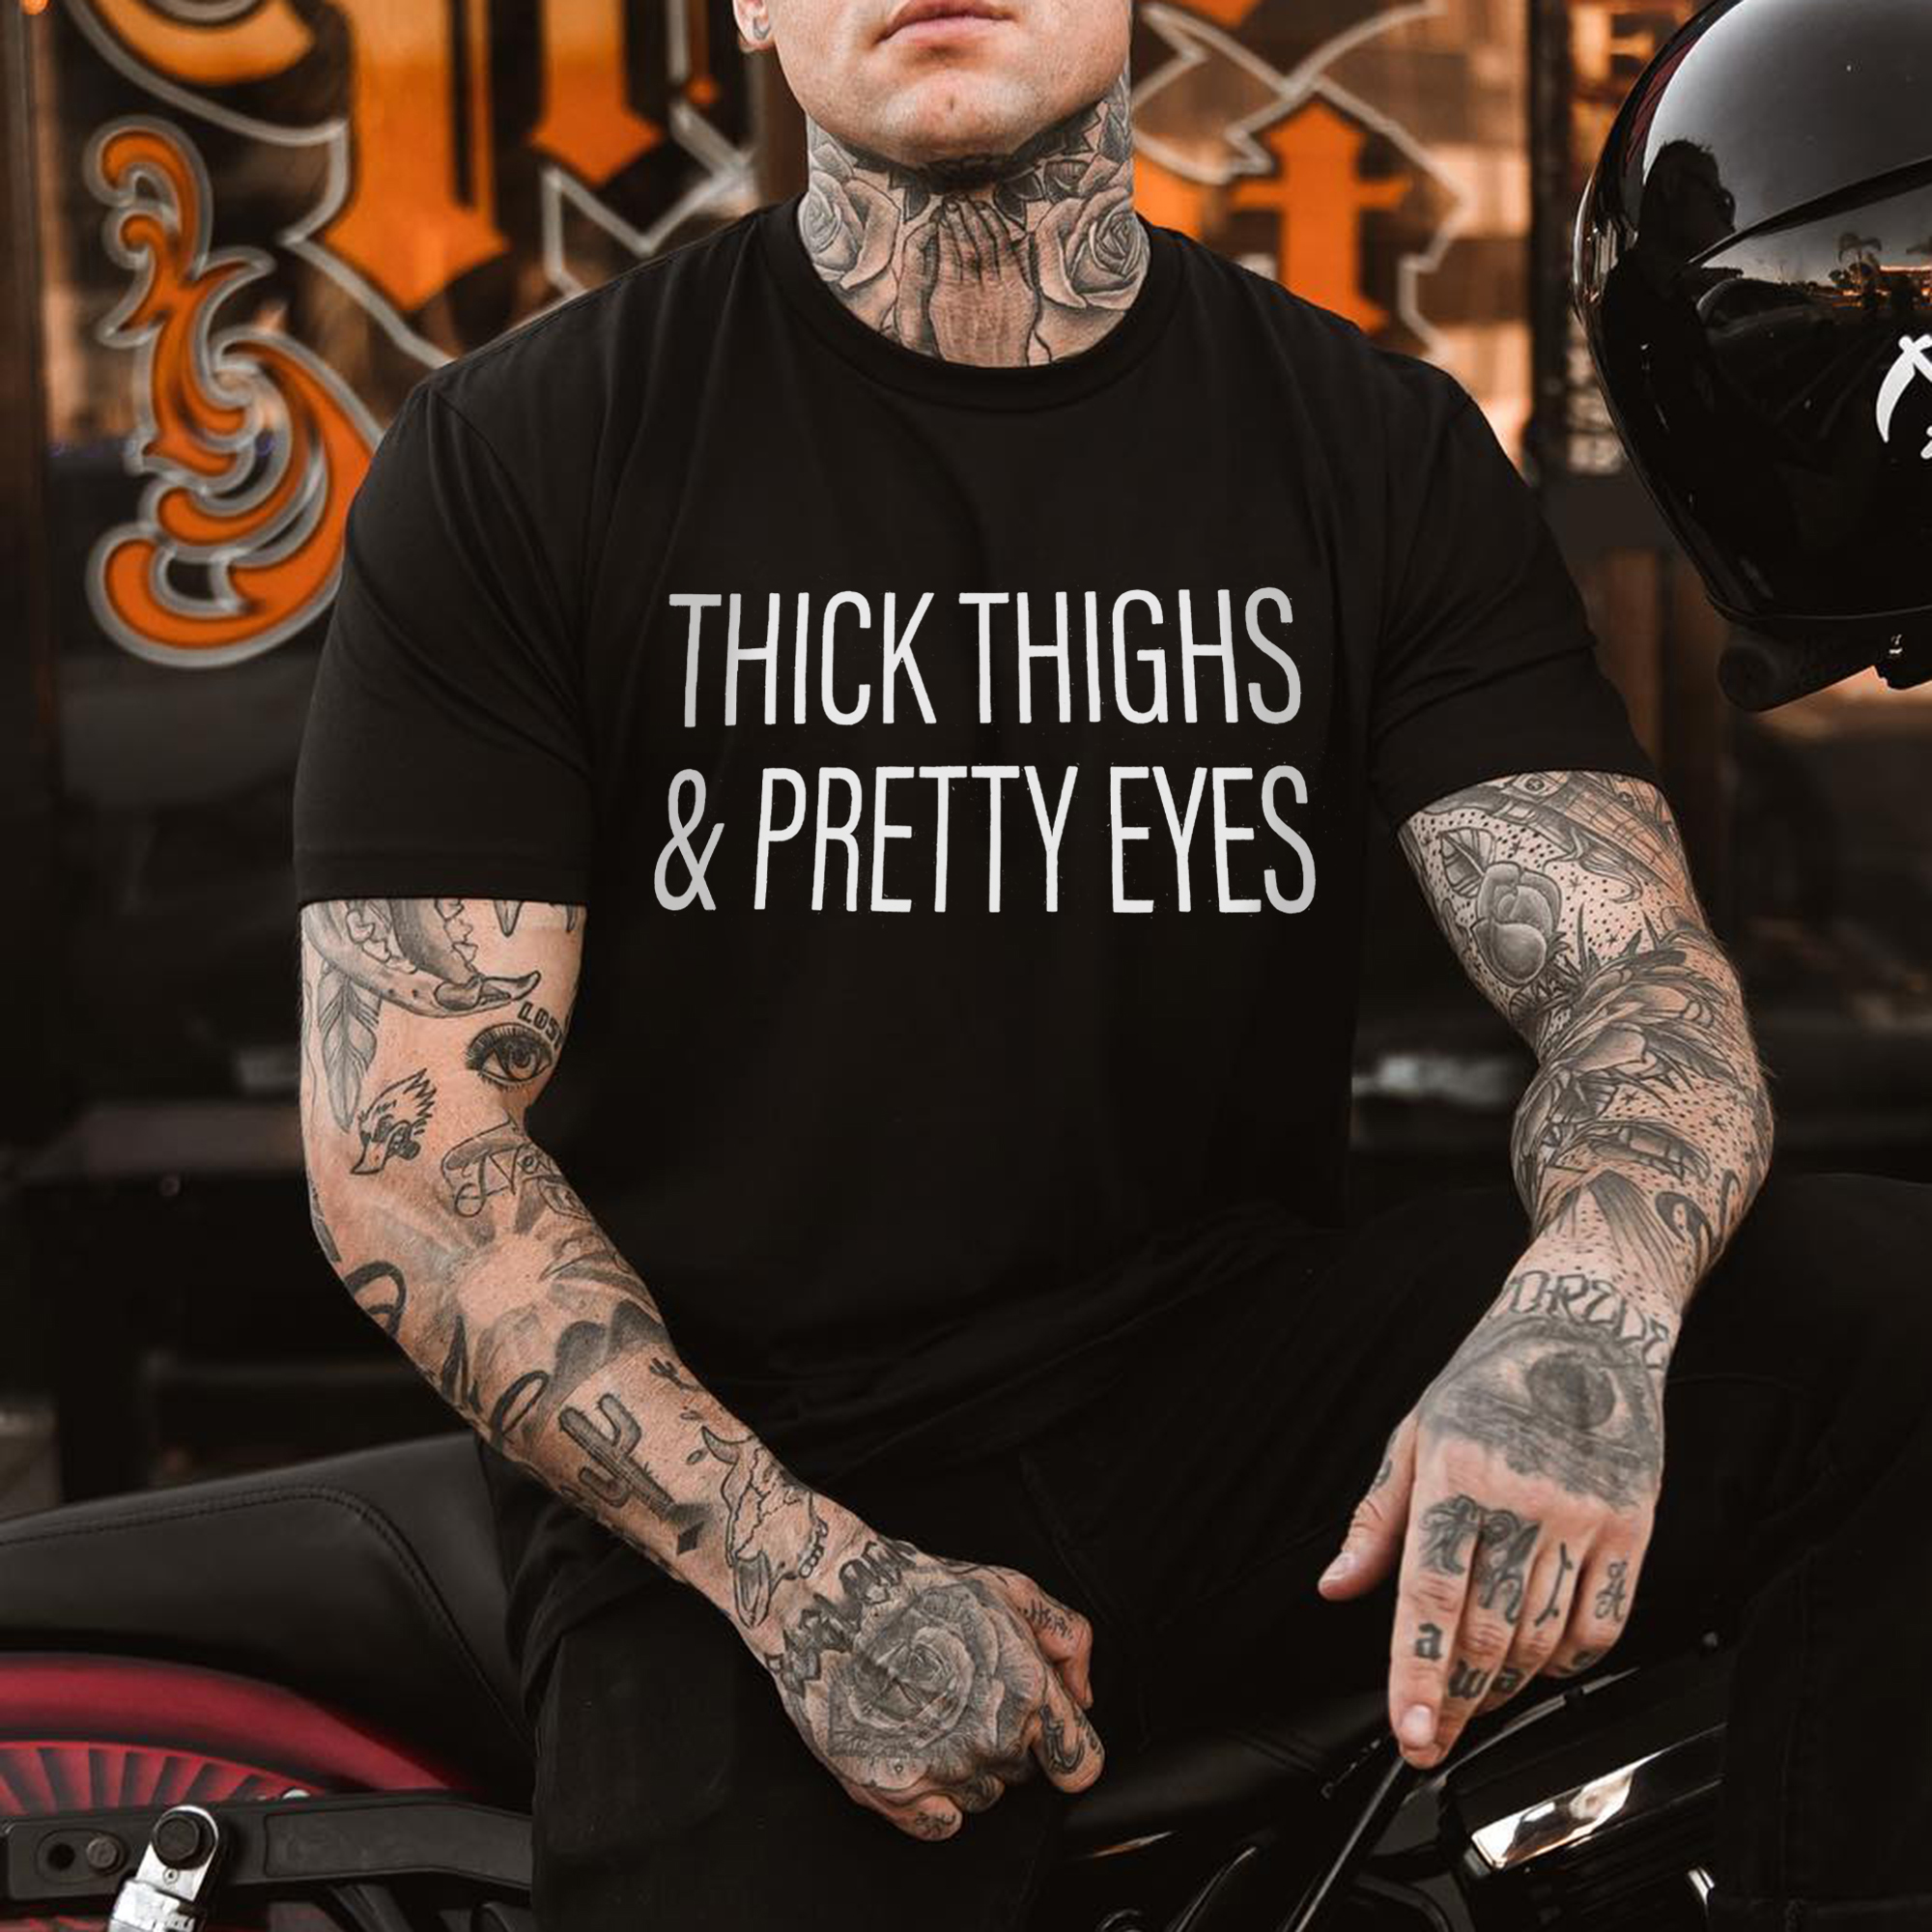 Thick Thighs & Pretty Eyes Print Men's T-shirt